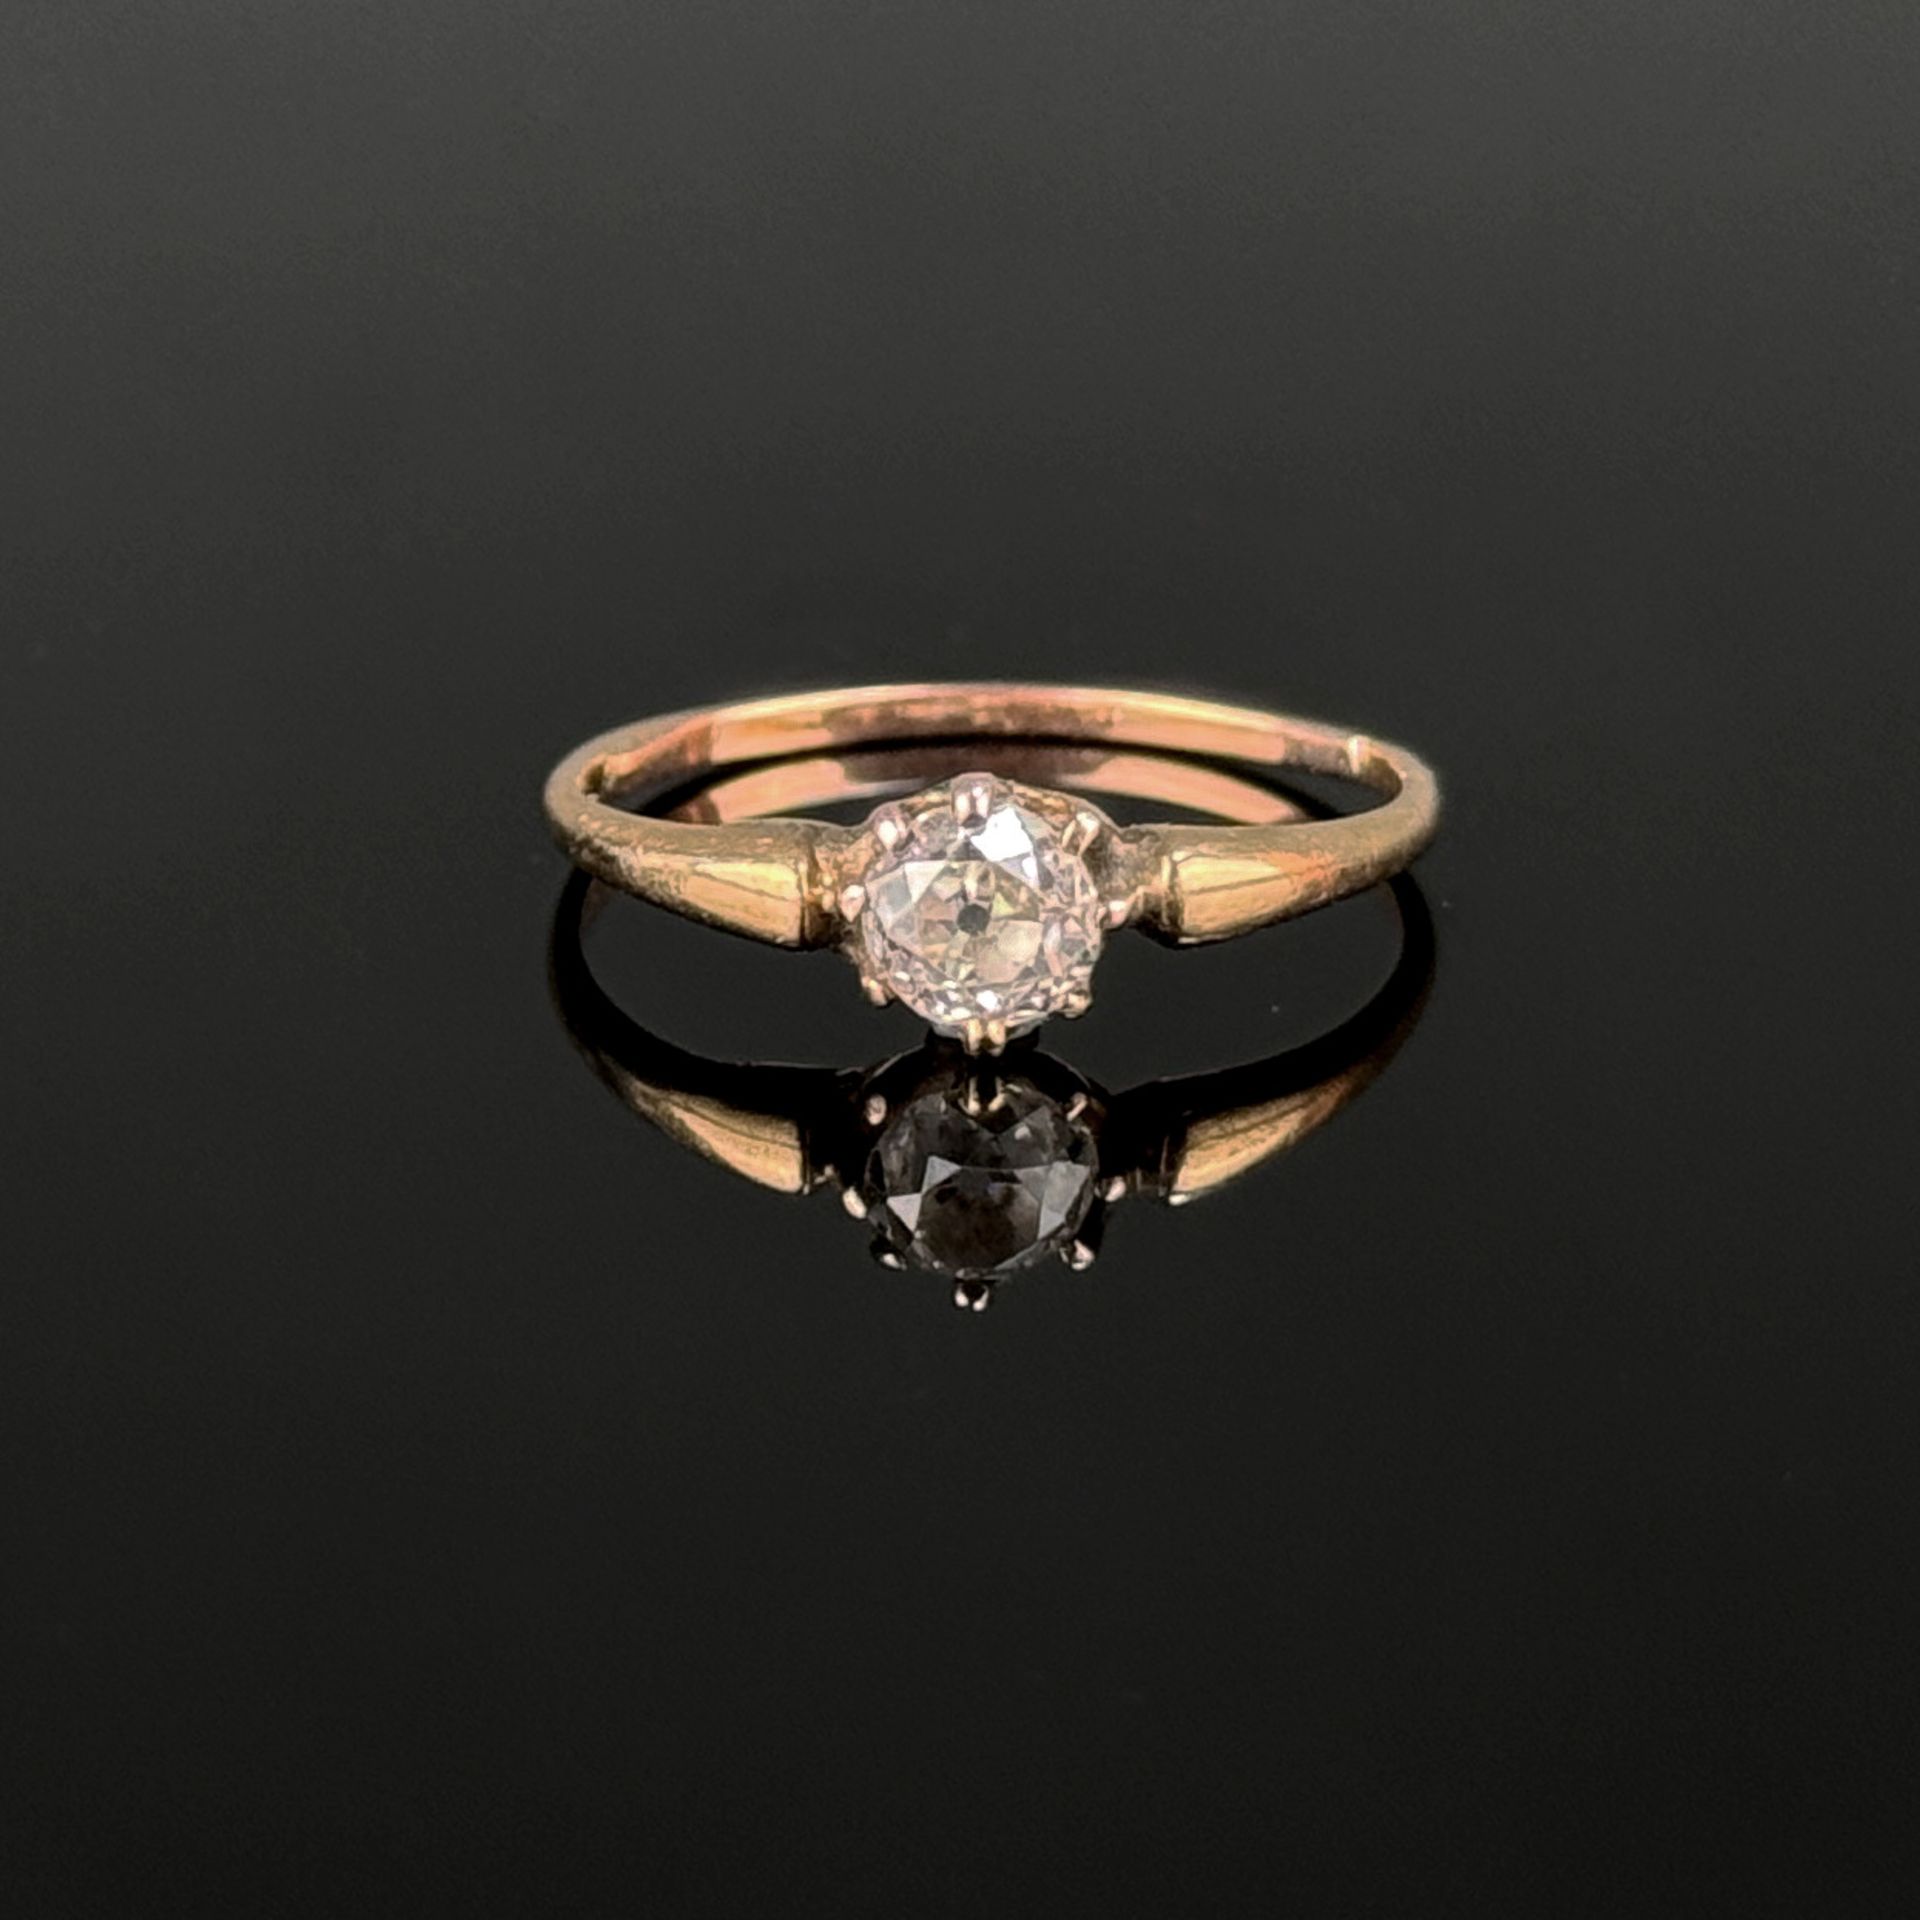 Diamant-Ring, 585/14K Gelbgold (getestet), 1,49g, mittig Diamant von um 0,35ct., Ringgröße 51,5 *11 - Bild 2 aus 2